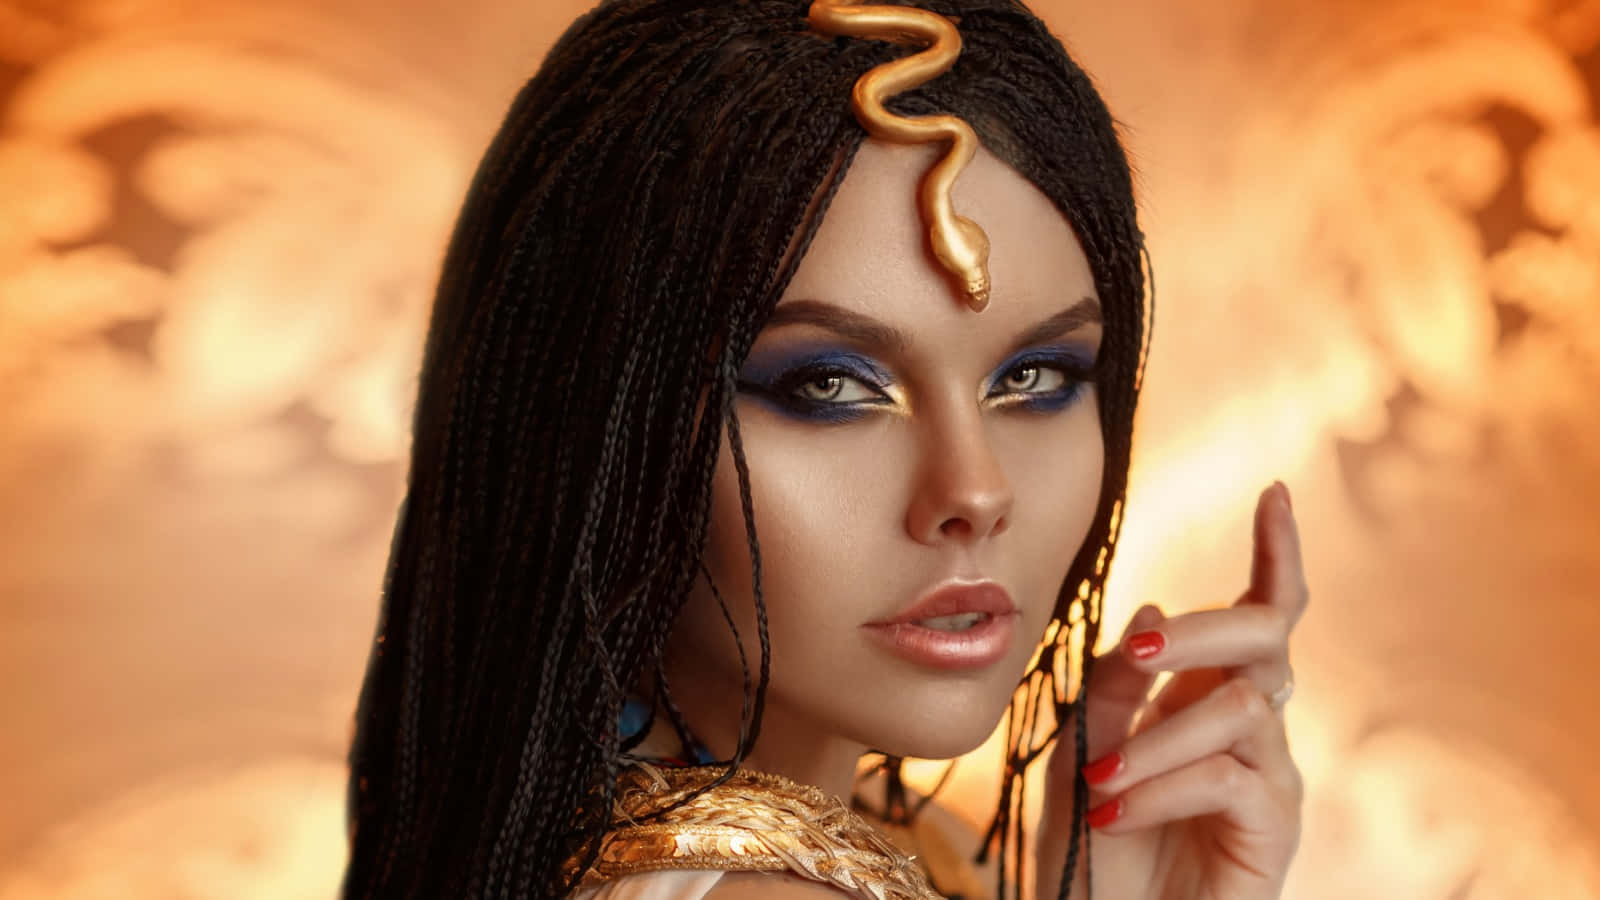 The Last Pharaoh of Egypt, Cleopatra